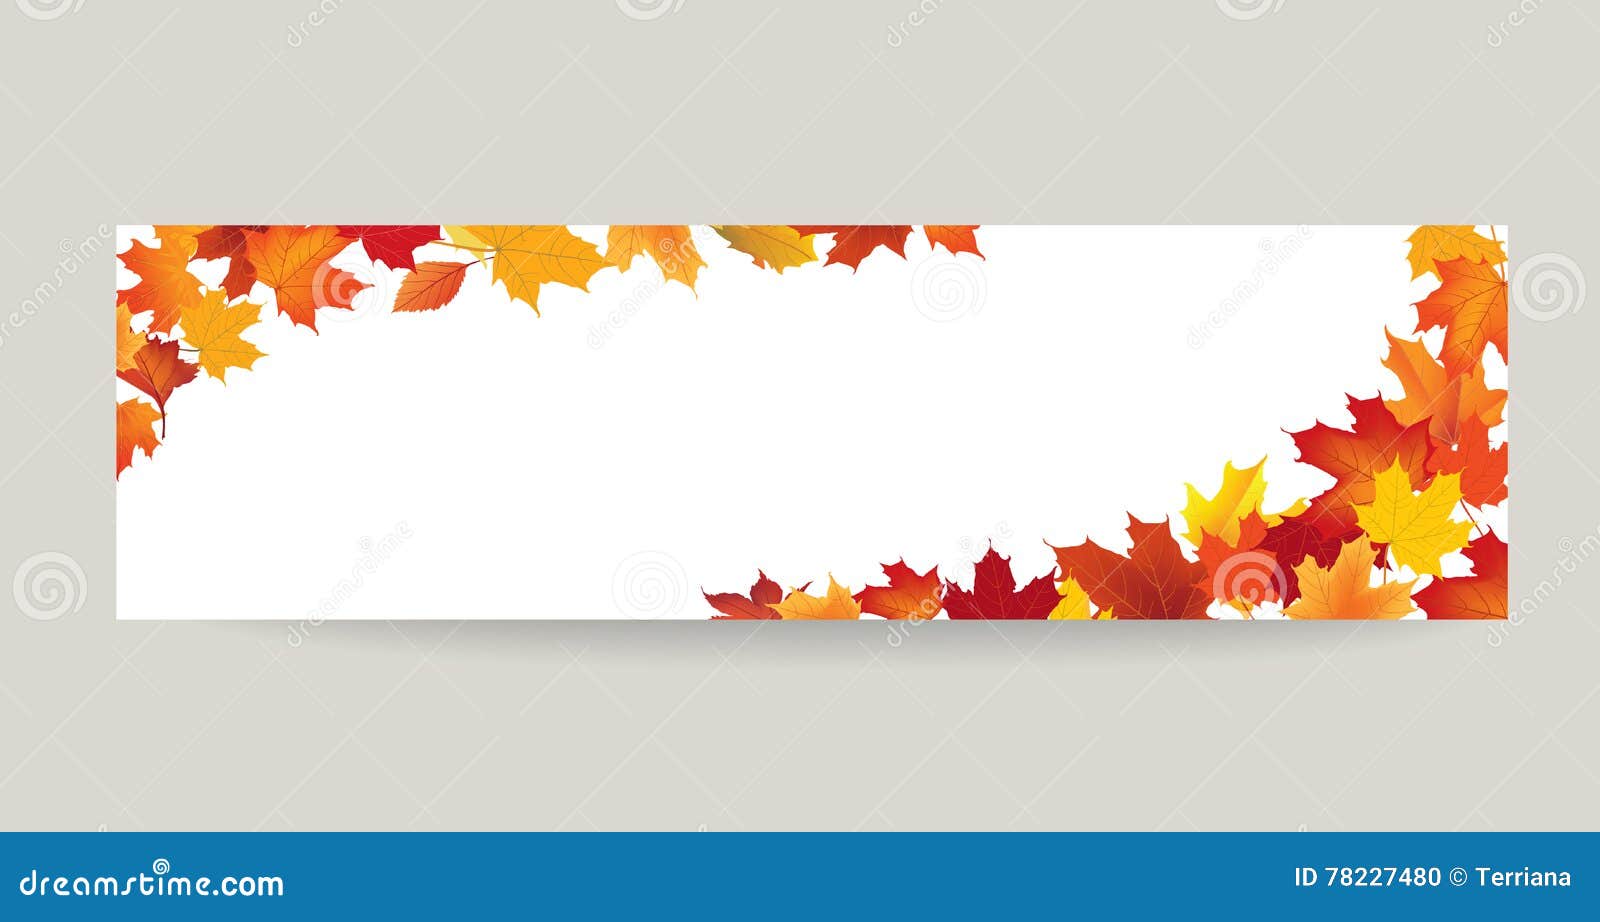 autumn banner